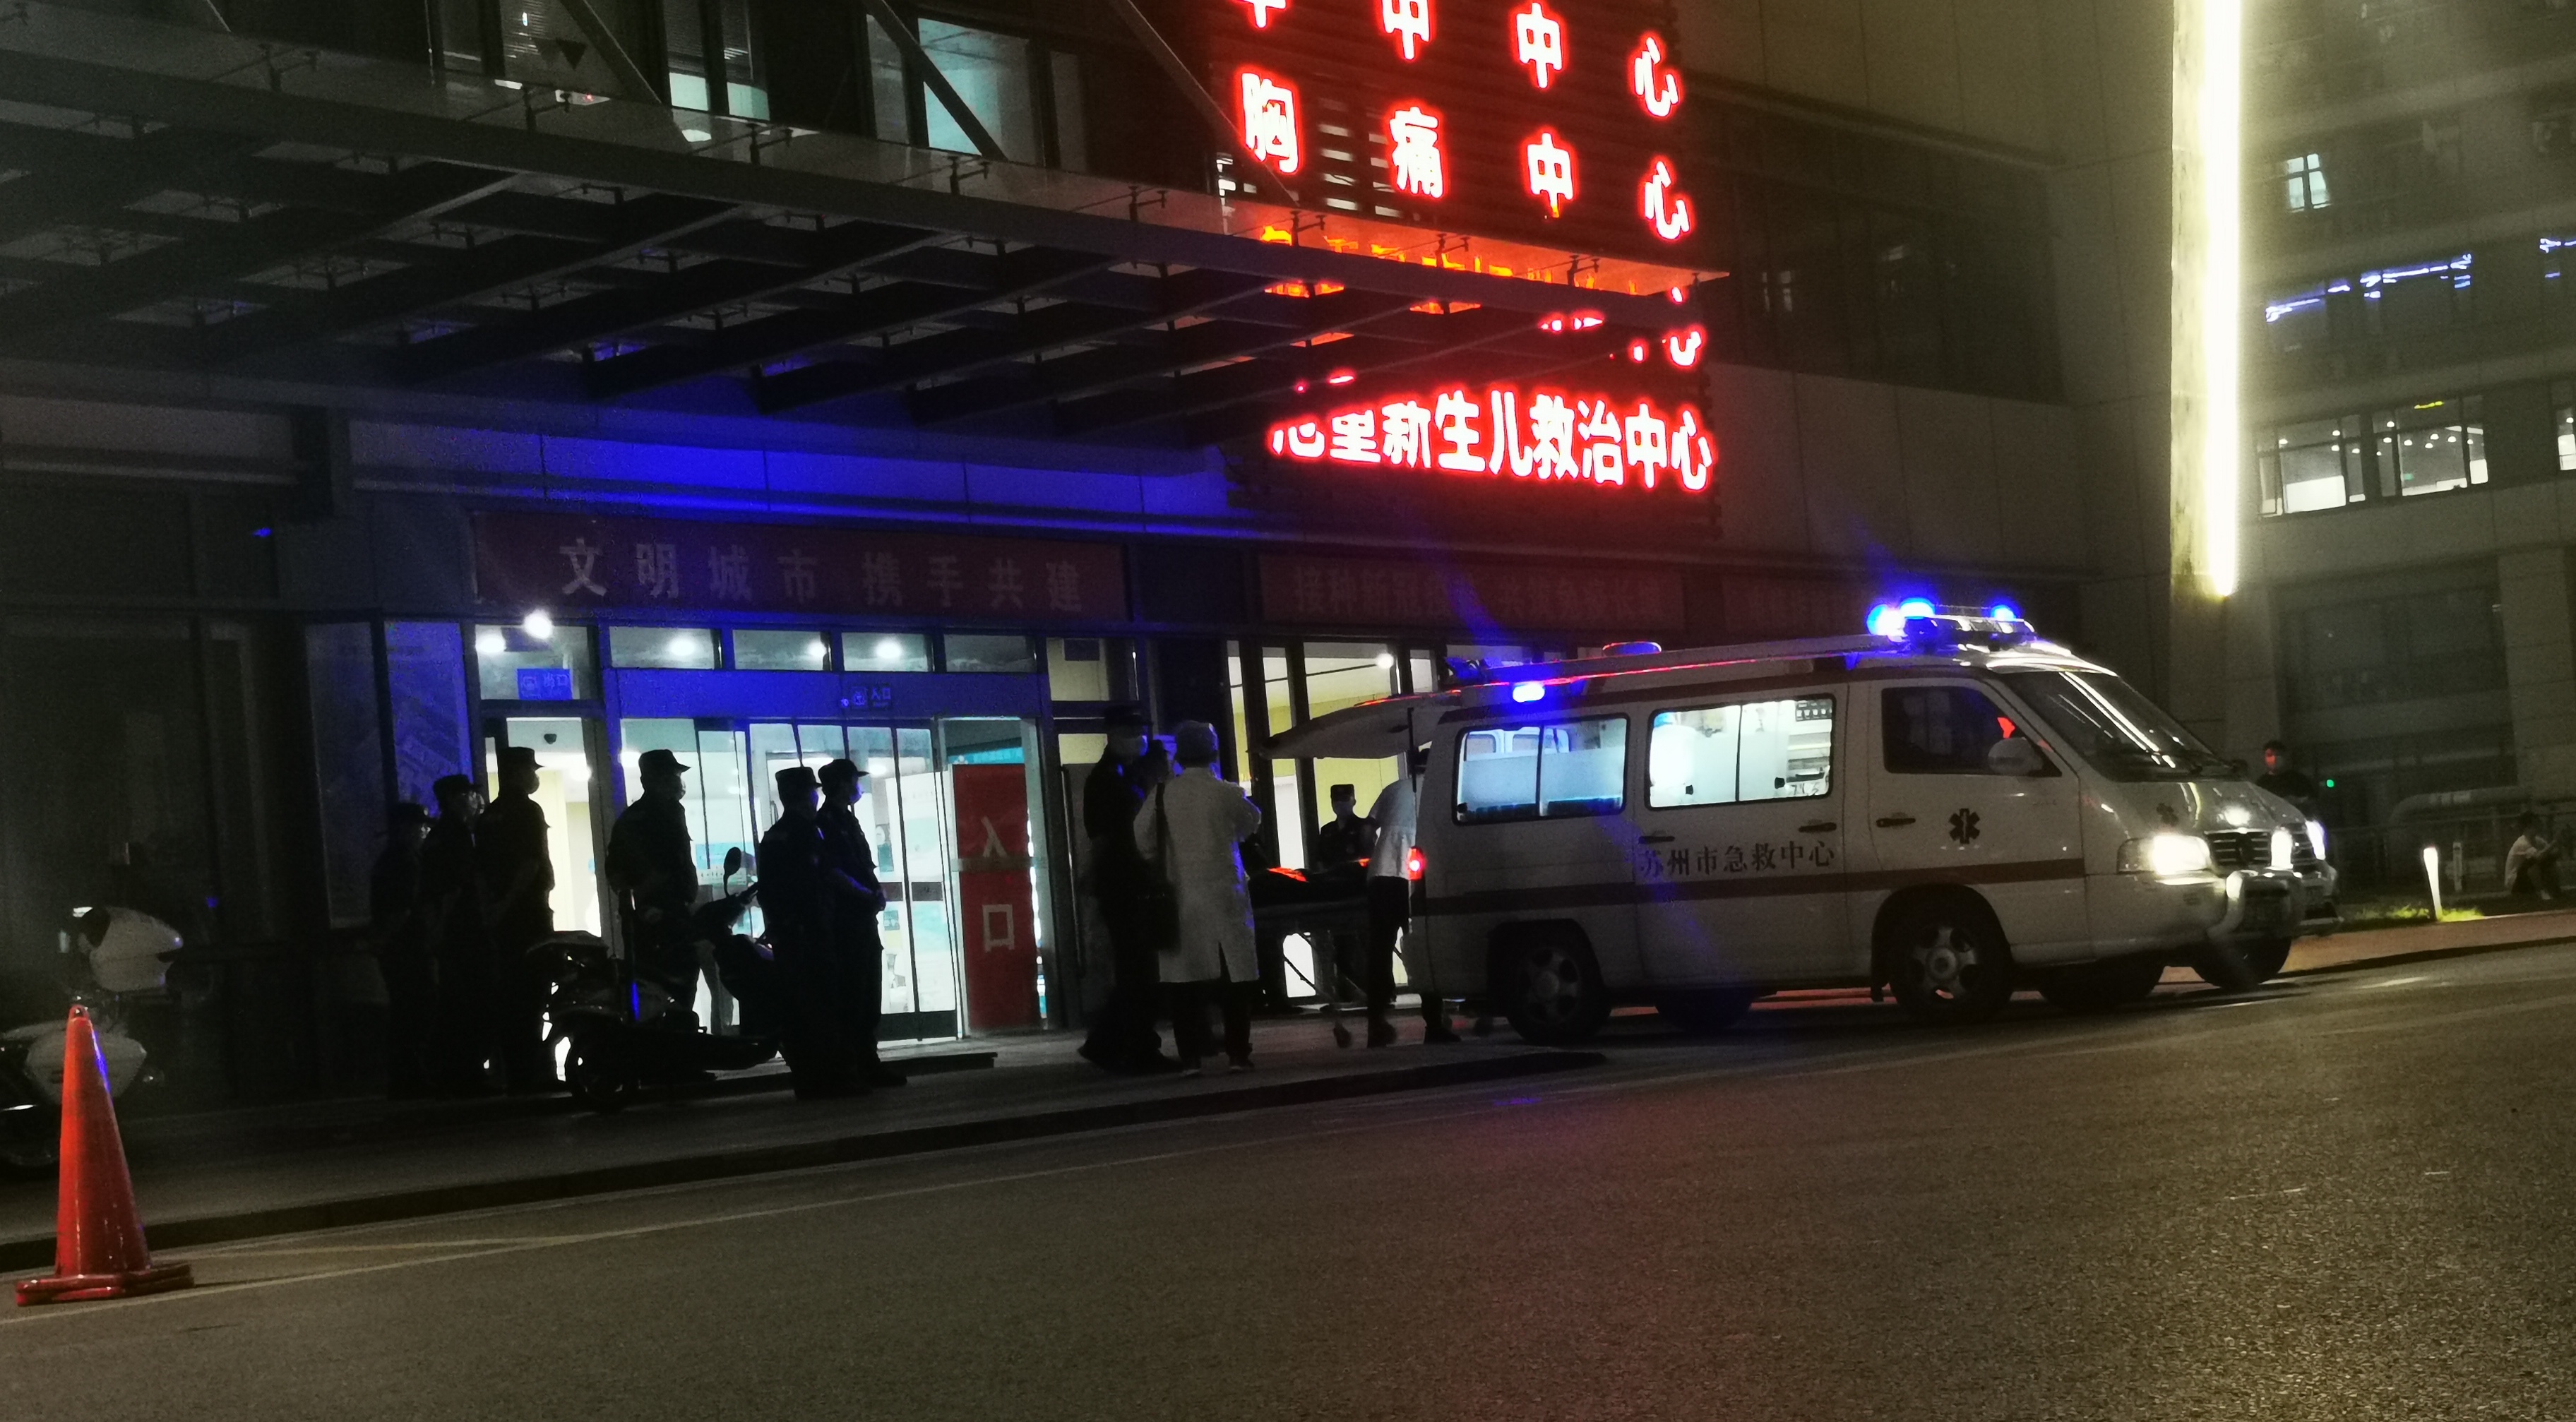 苏州酒店坍塌事故致8人遇难 疑与装修有关！山东青岛小哥逃过一劫：“一碗拉面救了我一命”